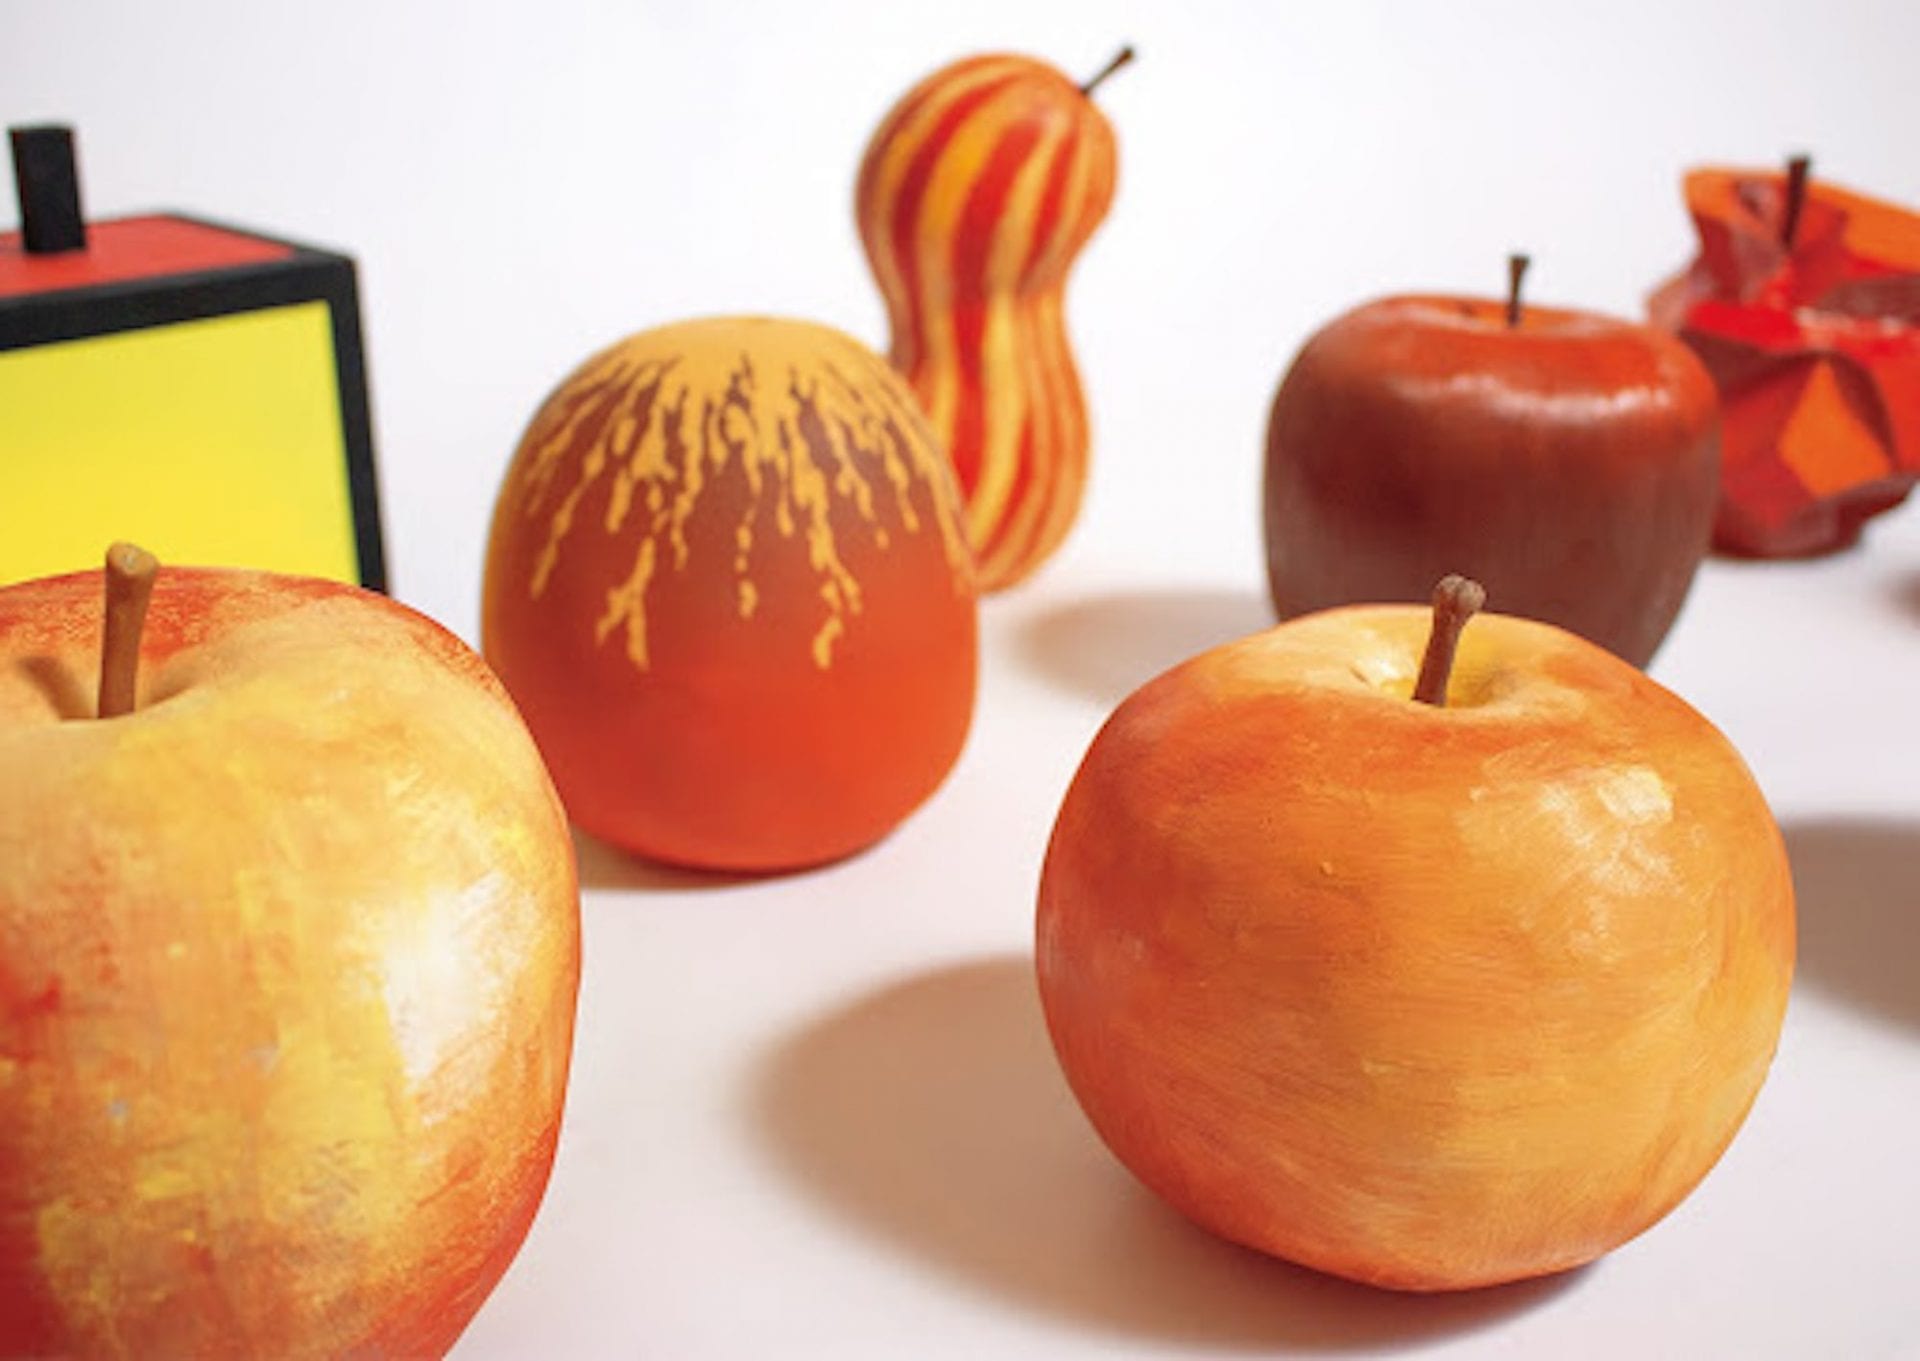 Un étudiant de la Kuwasawa Design School crée des pommes en s'inspirant des styles de 10 artistes célèbres